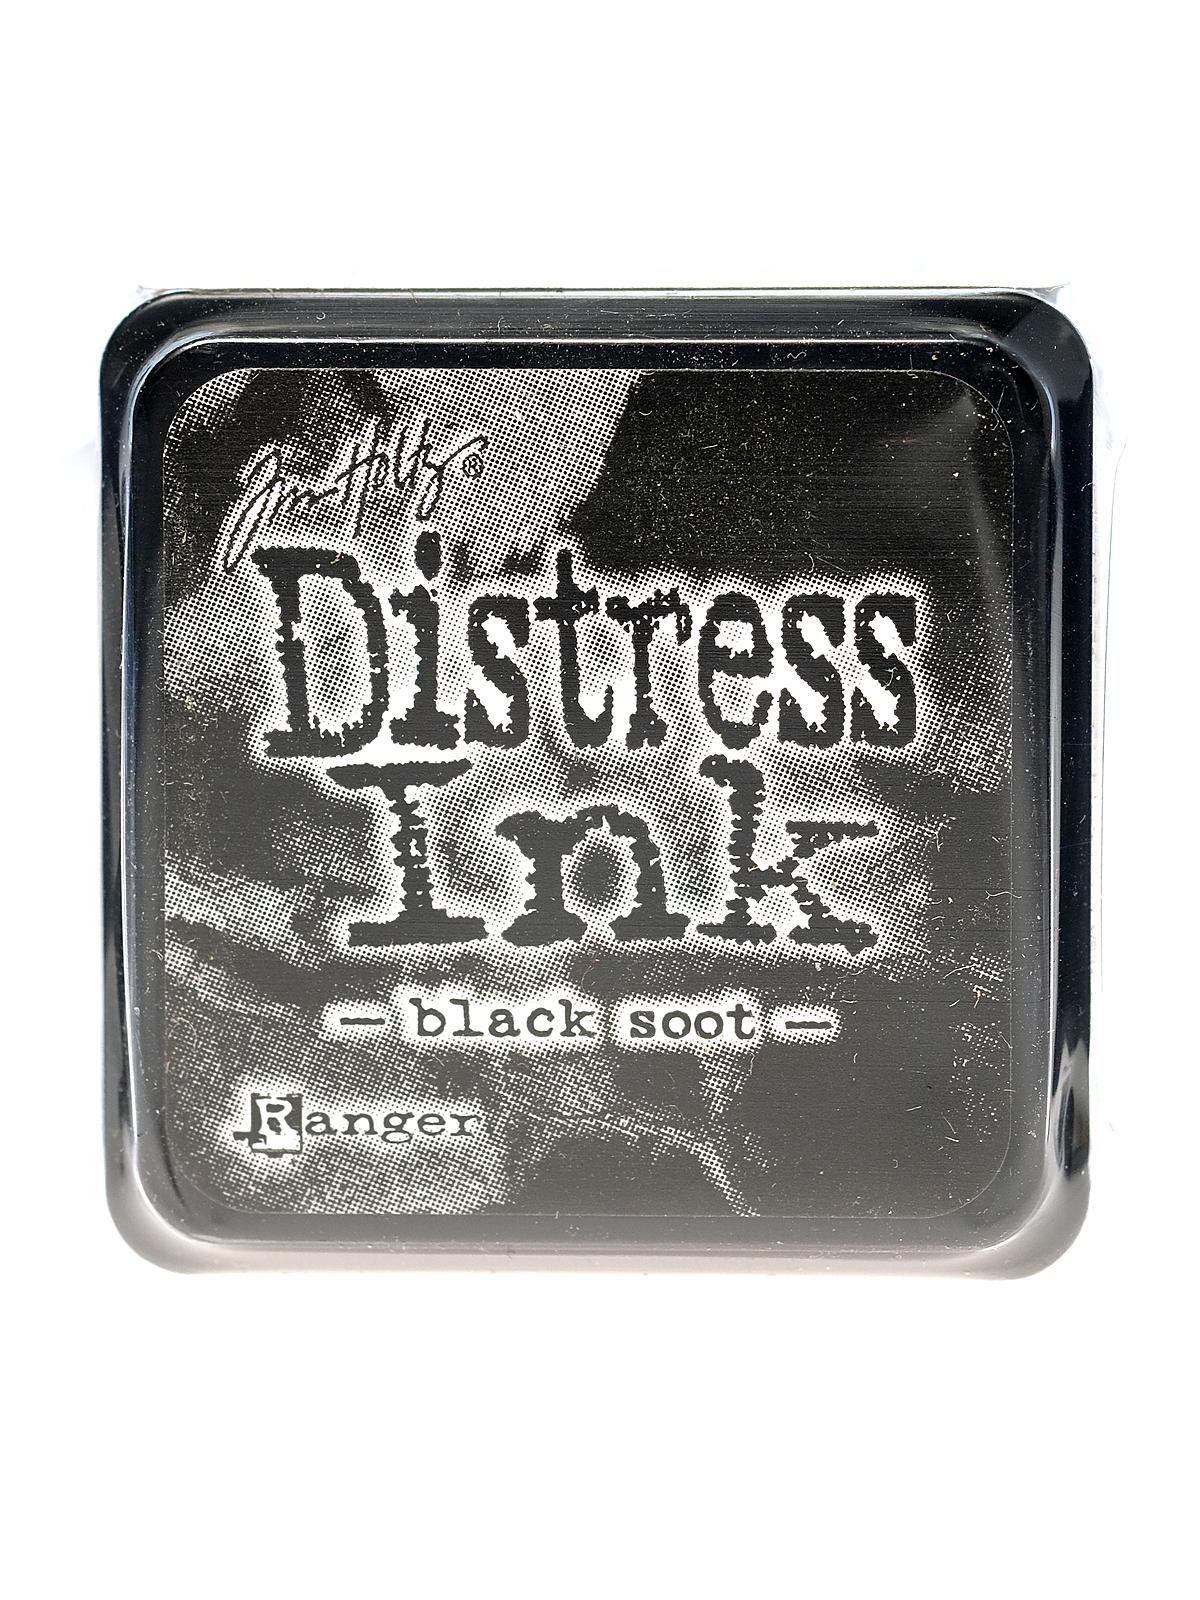 Tim Holtz Distress Mini Ink Pads Black Soot Each